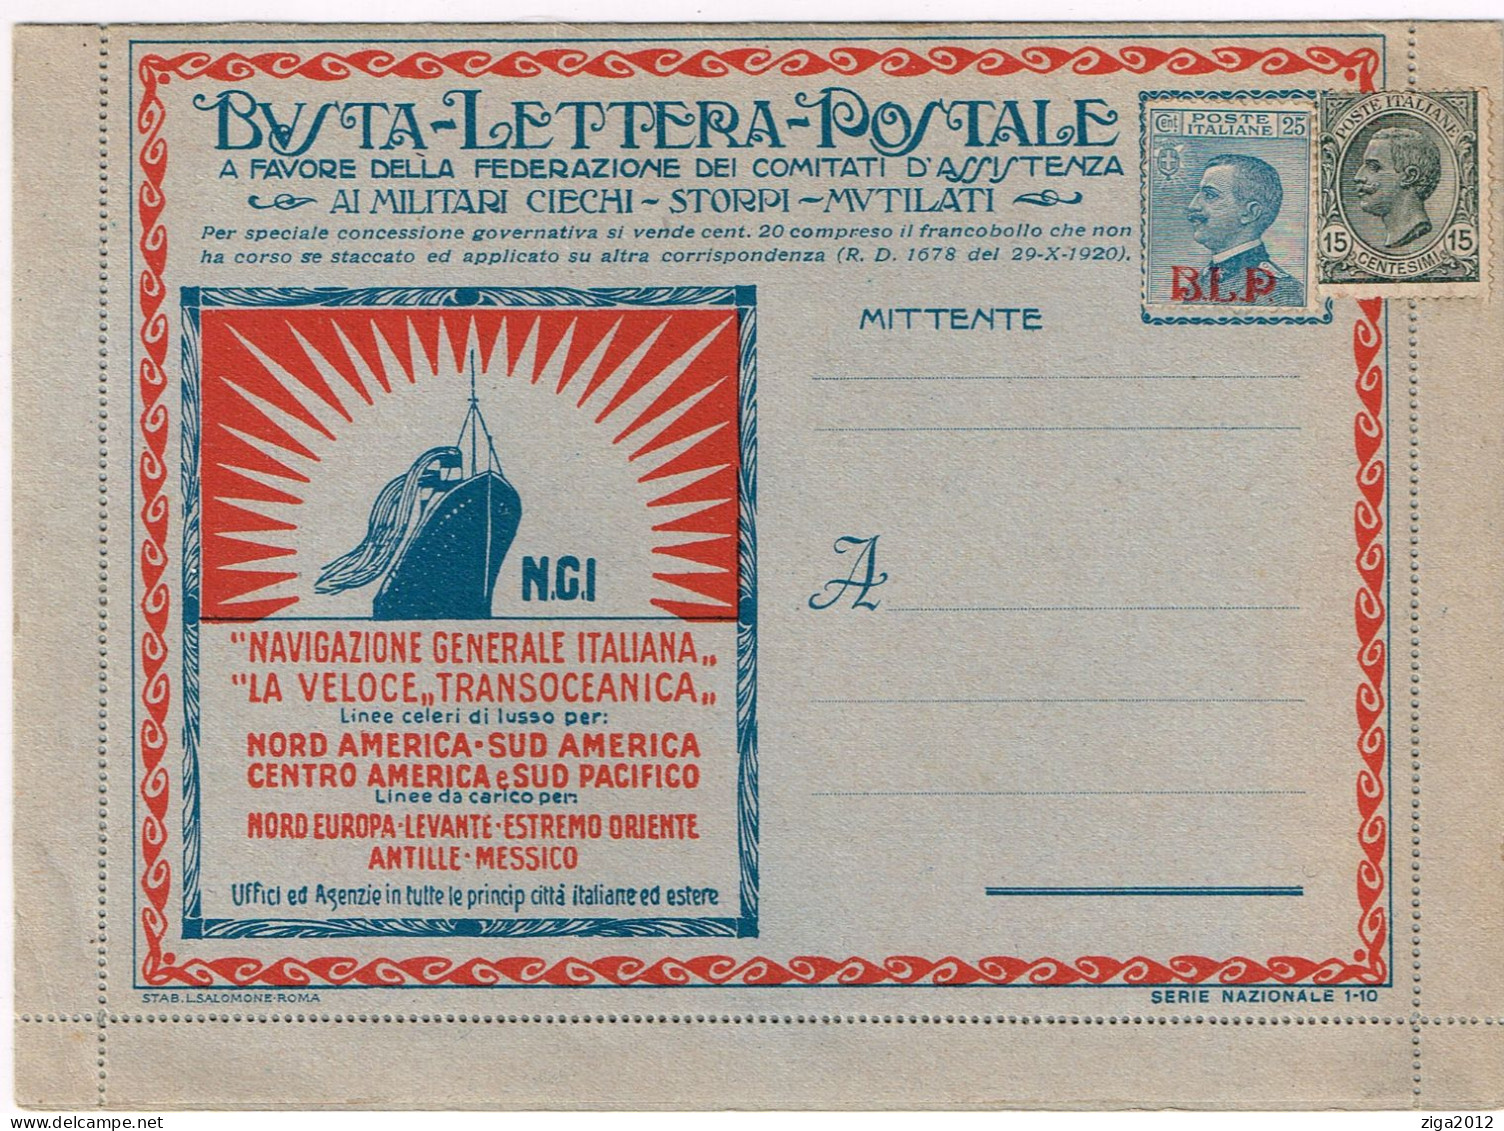 ITALY 1921 B.L.P. BUSTA LETTERA POSTALE CON C.25 I° TIPO NUOVA E COMPLETA - Reklame